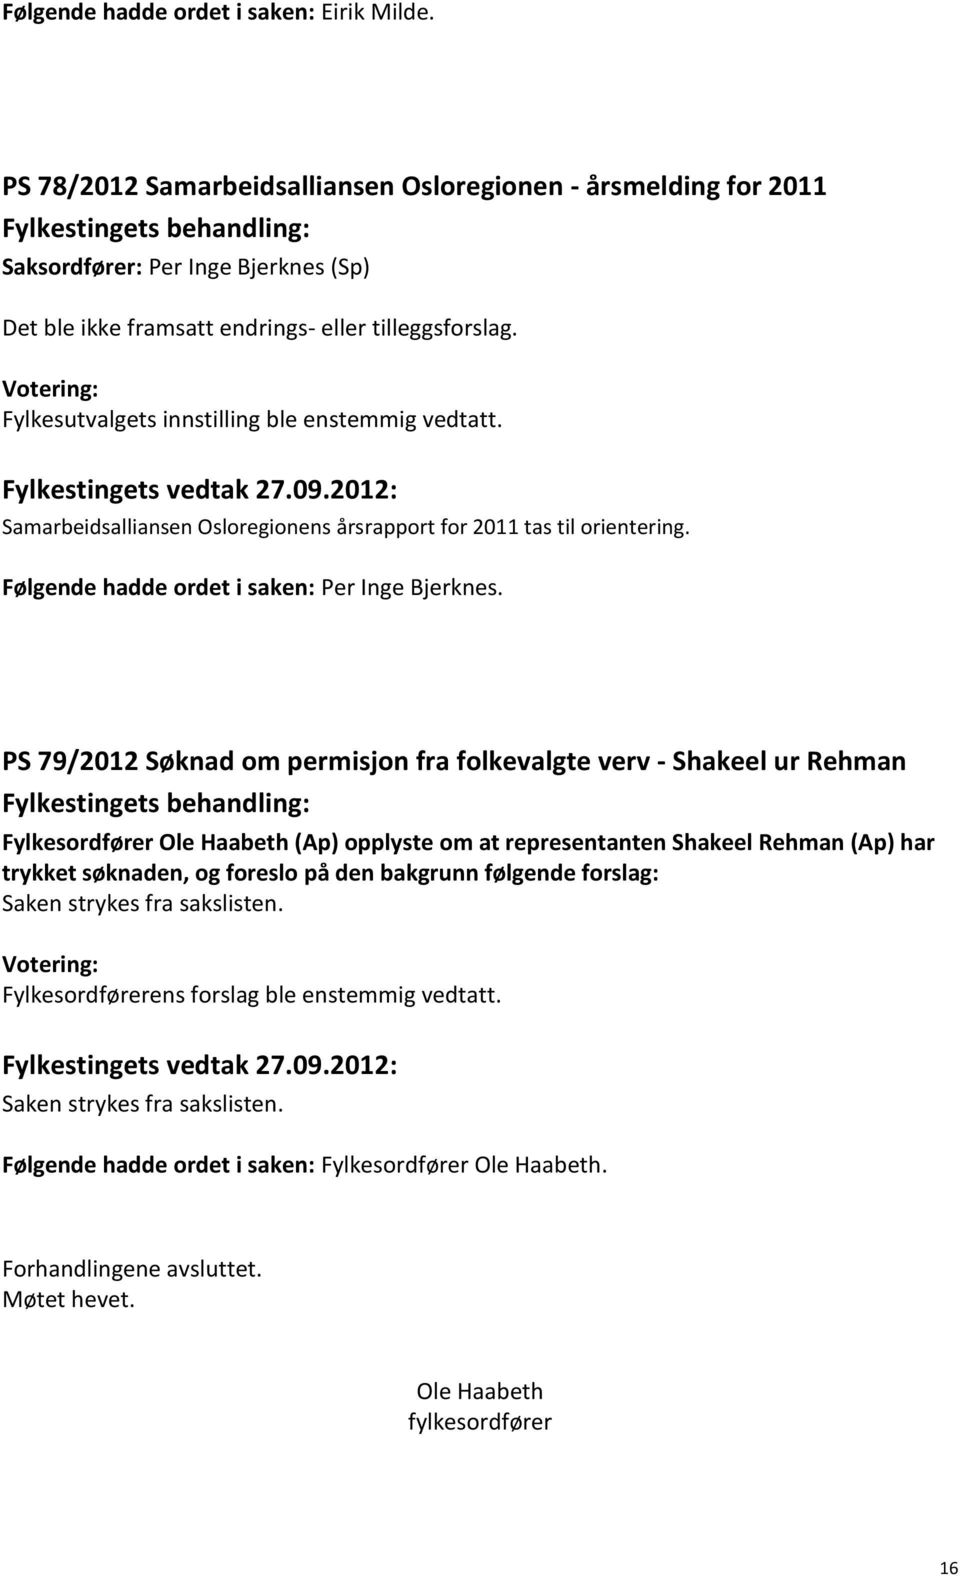 Samarbeidsalliansen Osloregionens årsrapport for 2011 tas til orientering. Følgende hadde ordet i saken: Per Inge Bjerknes.